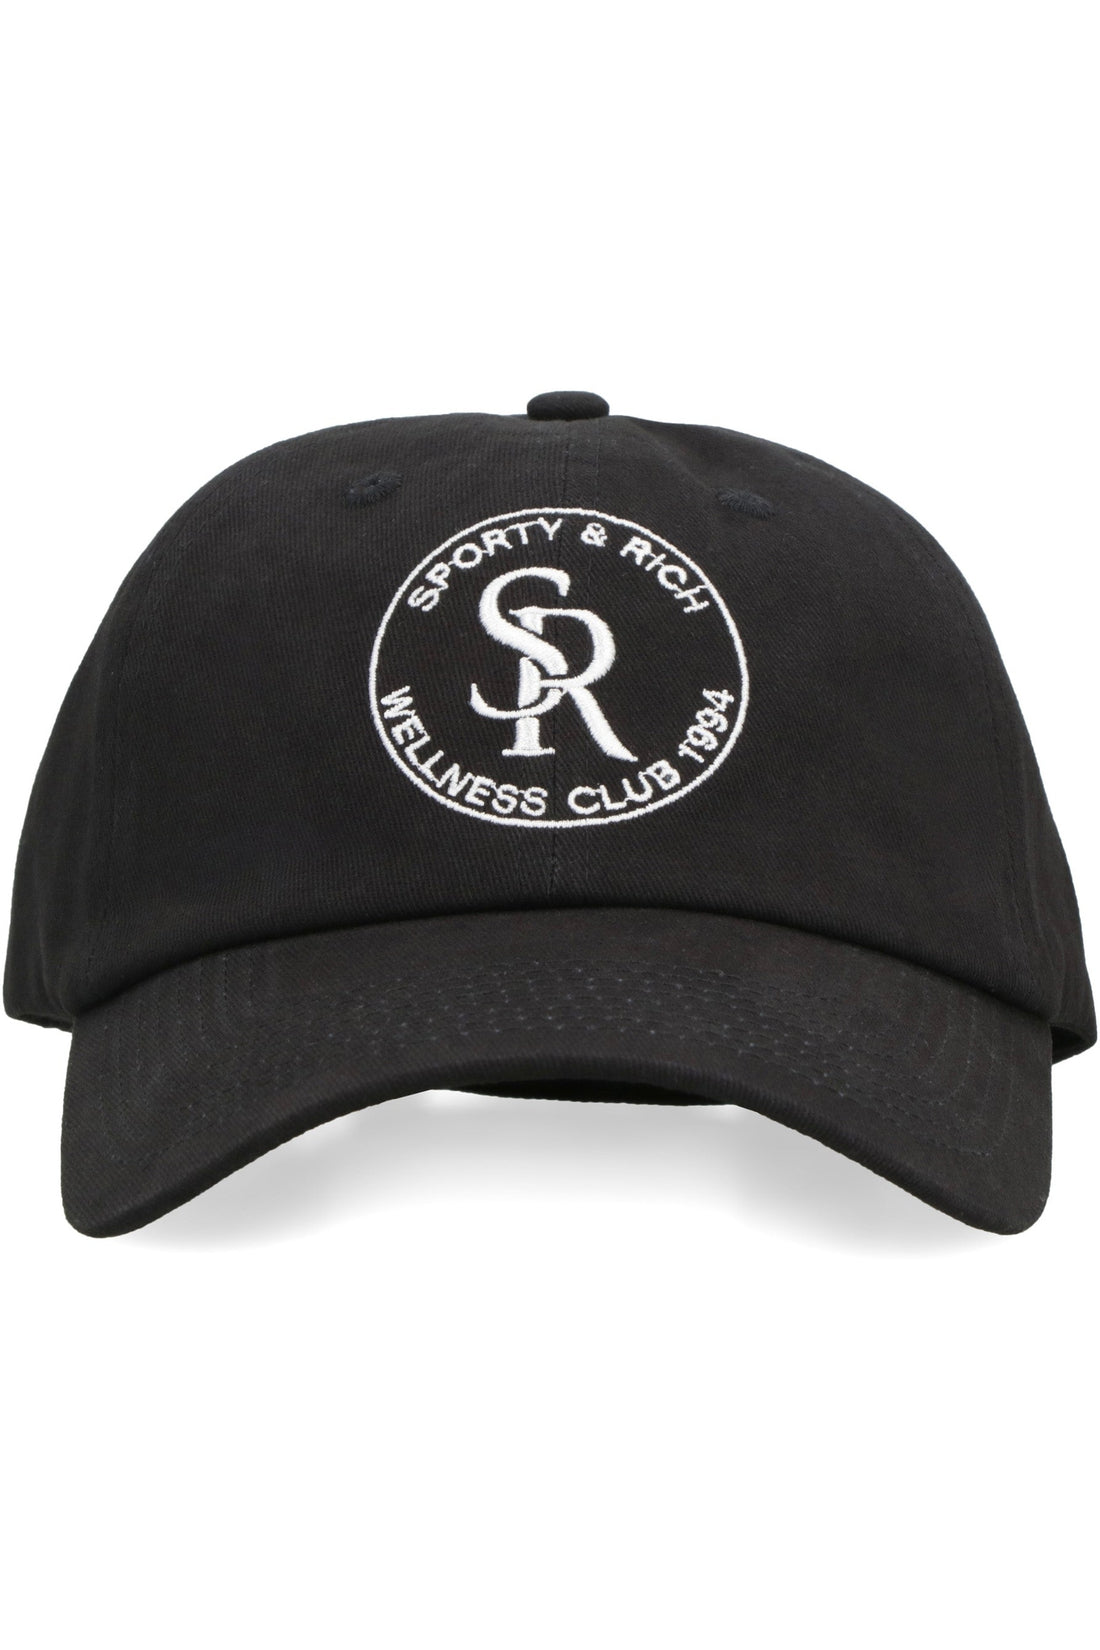 Sporty & Rich-OUTLET-SALE-Logo baseball cap-ARCHIVIST